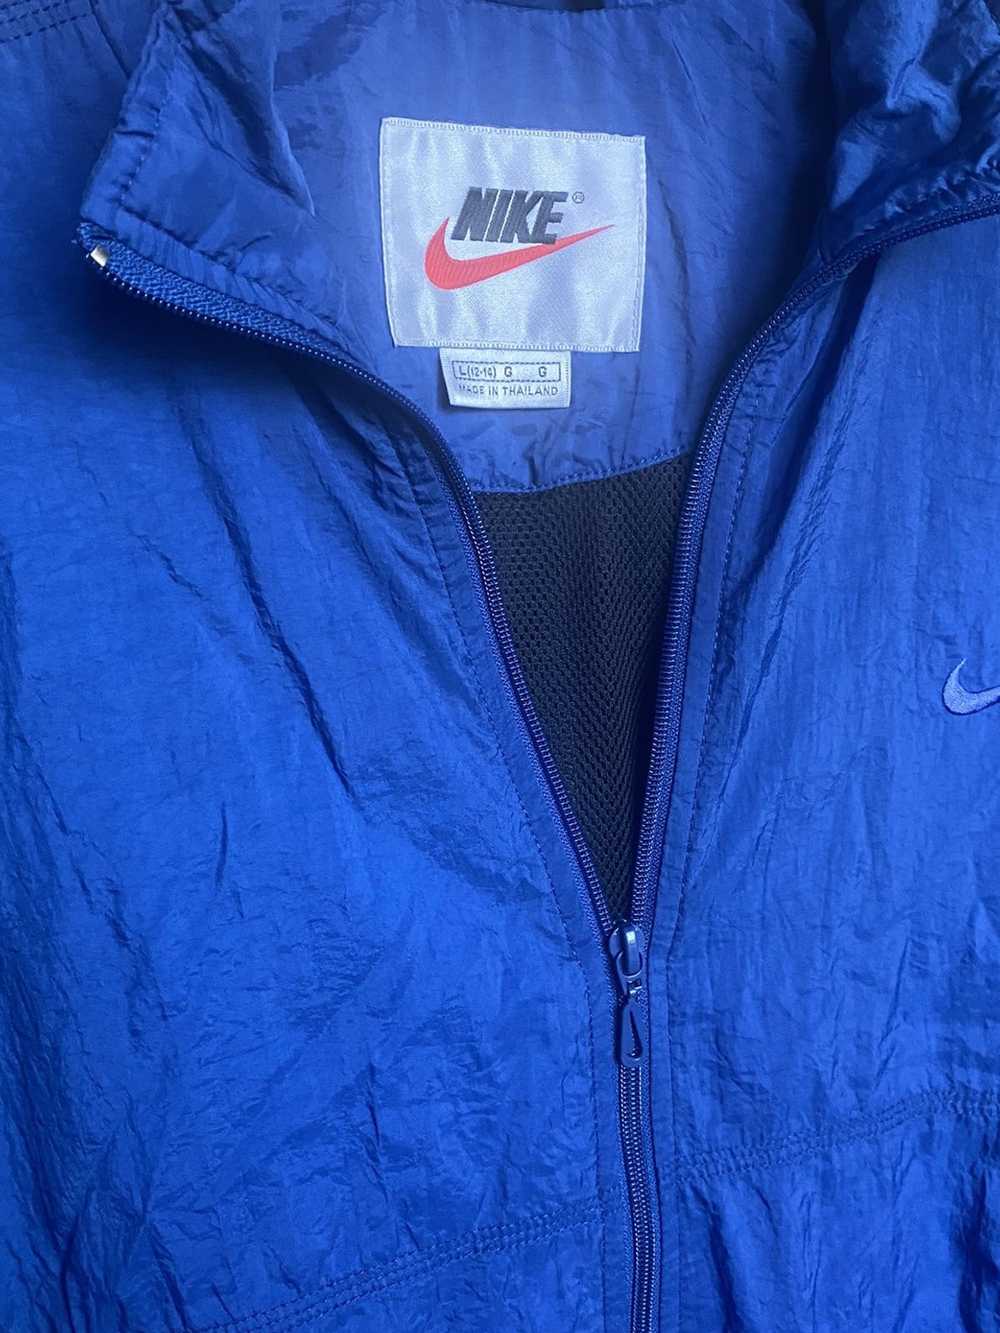 Nike × Vintage Crinkled Nylon Track Jacket - image 7